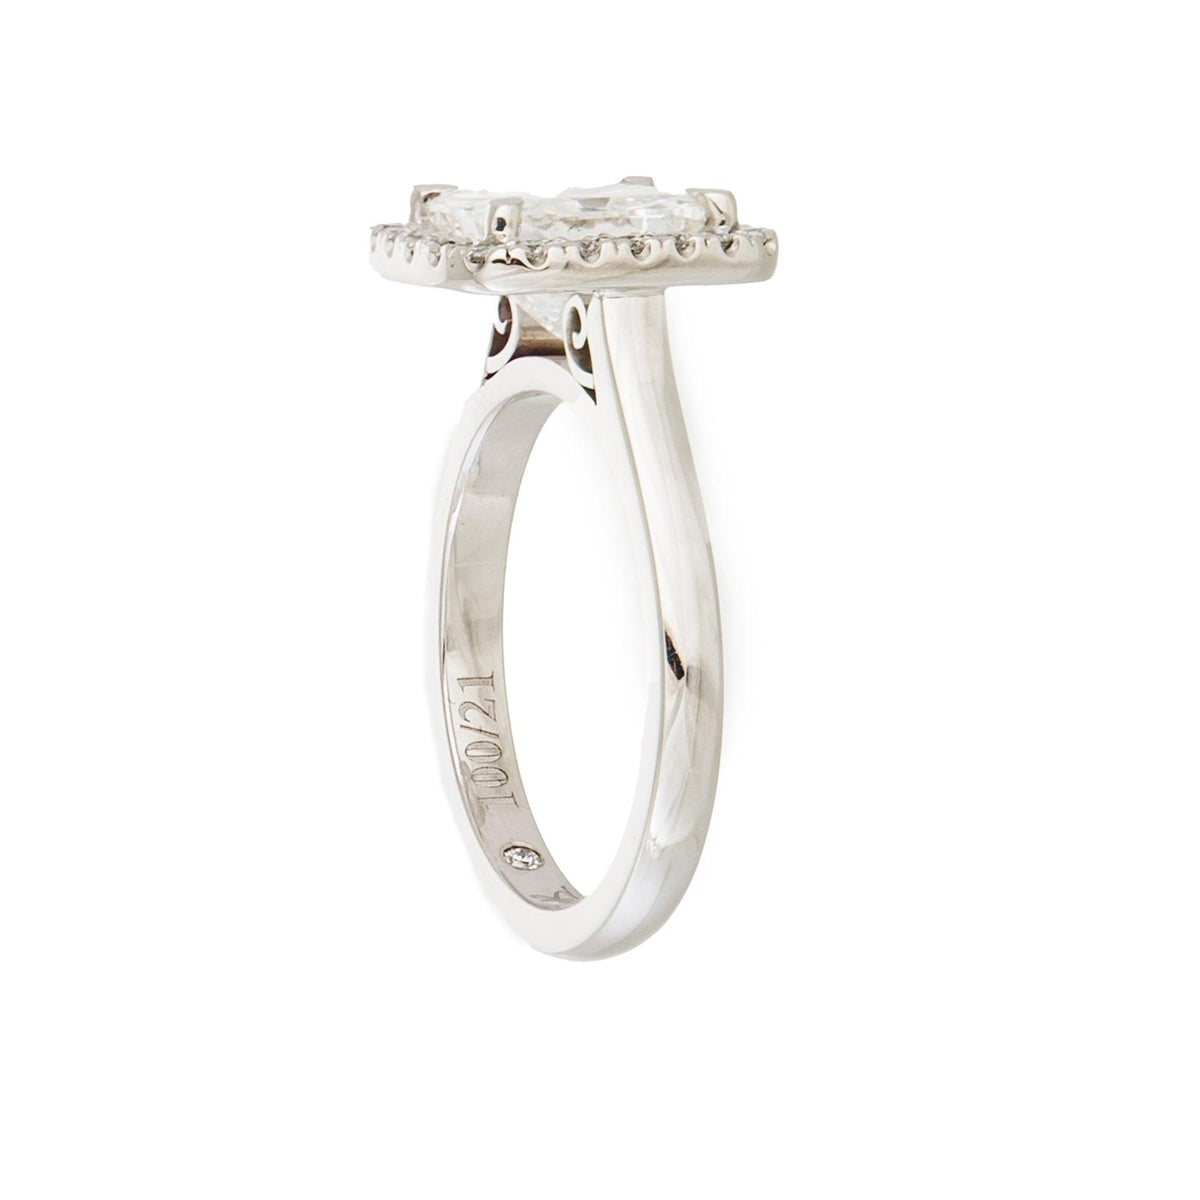 Stuart Bishop Collection Princess Cut Halo Diamond Ring in 18ct White Gold TDW 2.740 - Wallace Bishop